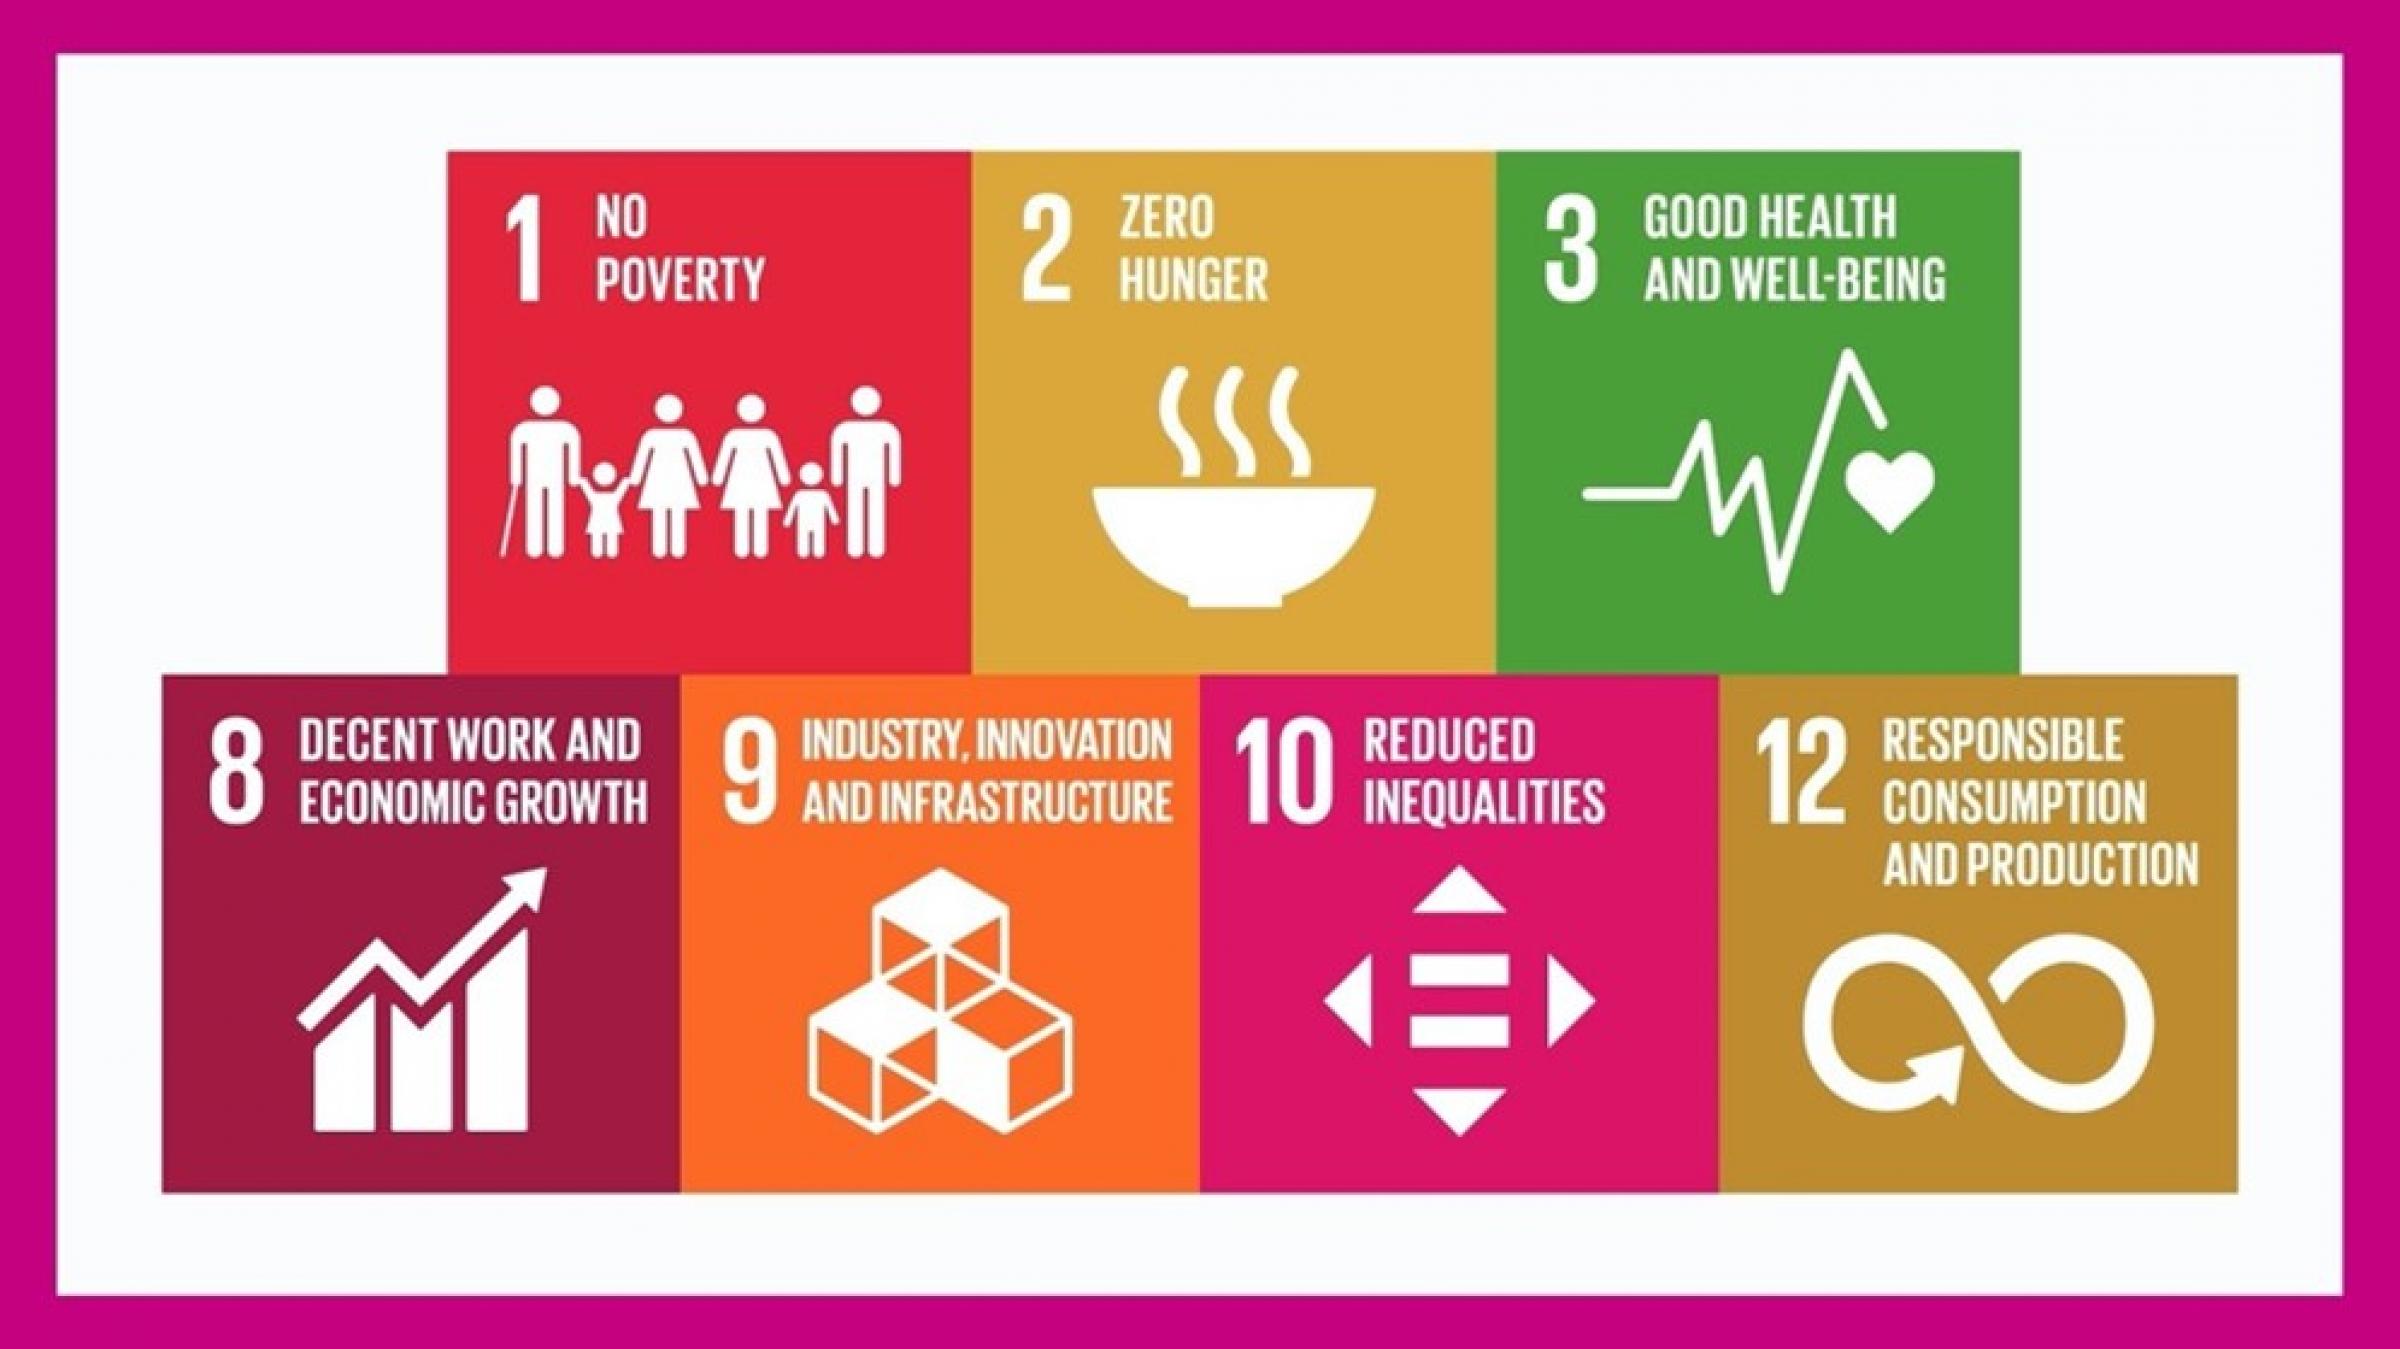 関連するSDGs (Sustainable Development Goals)